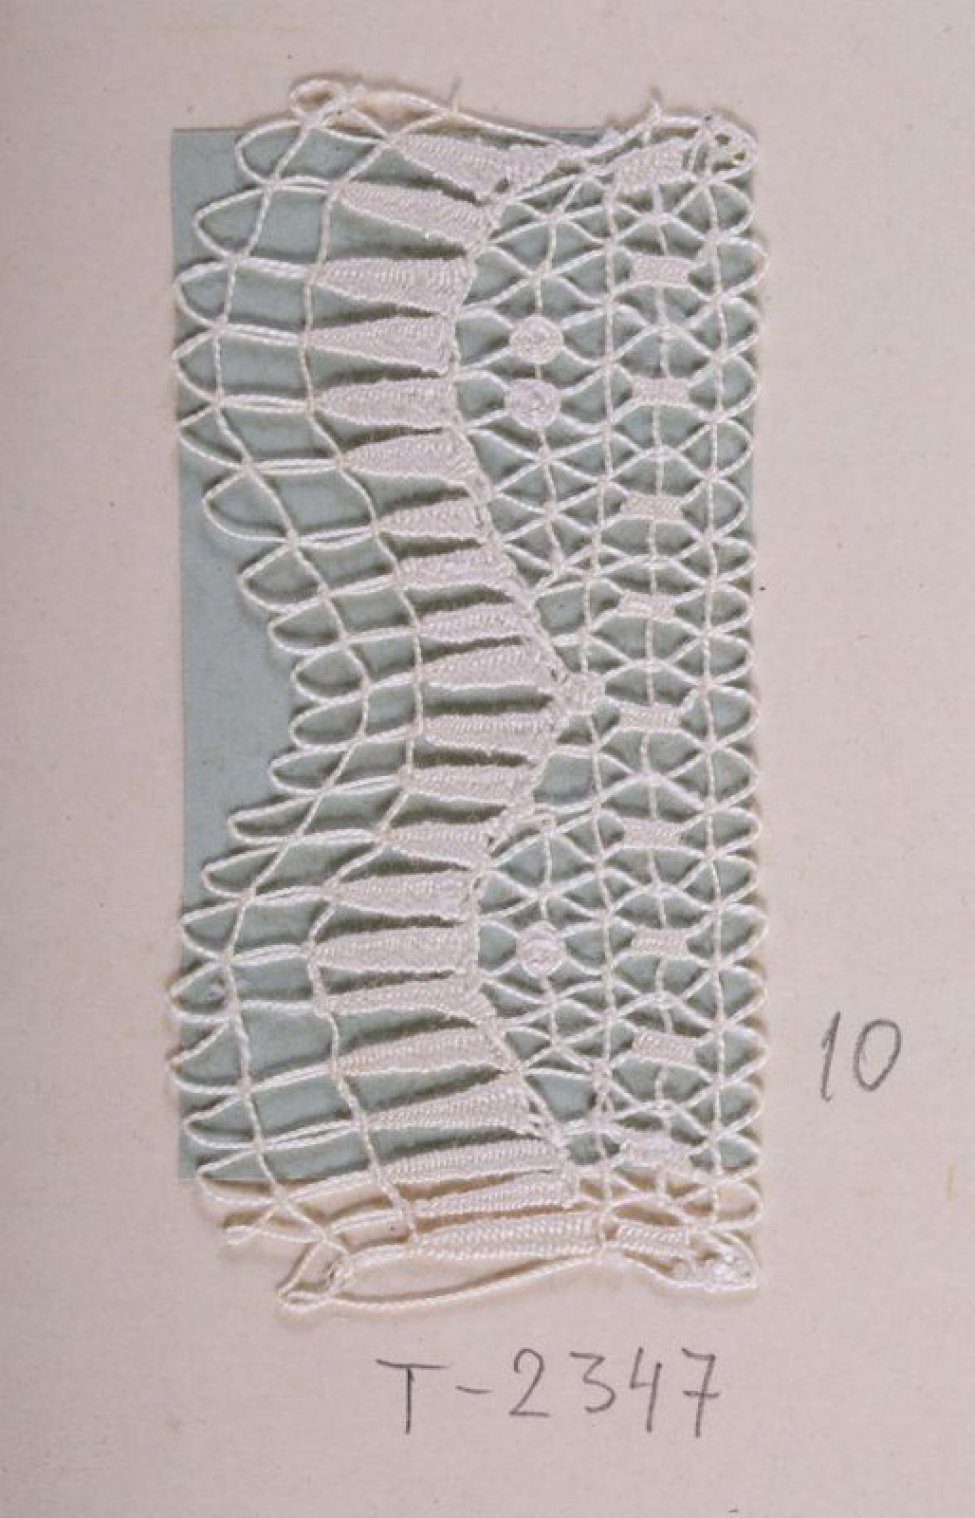 Образец белого цвета в виде ажурной полосы, один край которой составлен двумя фестонами. По образцу проходит волнистая линия, повторяющая фестоны из плотно сплетённых зубчатых столбиков. Образец пришит к картонному листу.